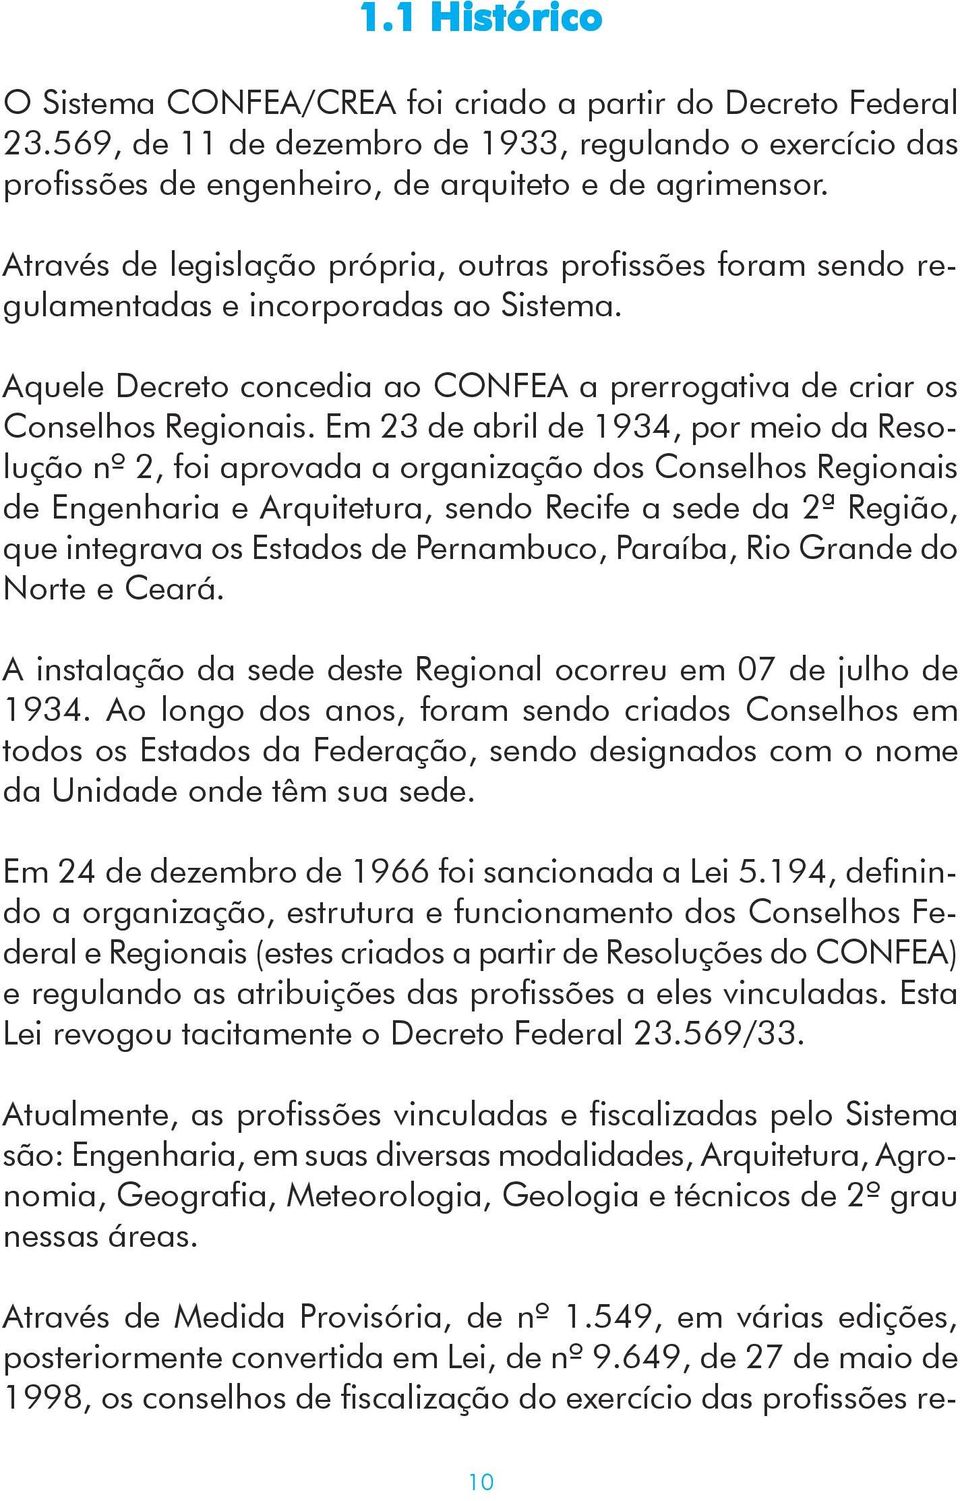 Em 23 de abril de 1934, por meio da Resolução nº 2, foi aprovada a organização dos Conselhos Regionais de Engenharia e Arquitetura, sendo Recife a sede da 2ª Região, que integrava os Estados de